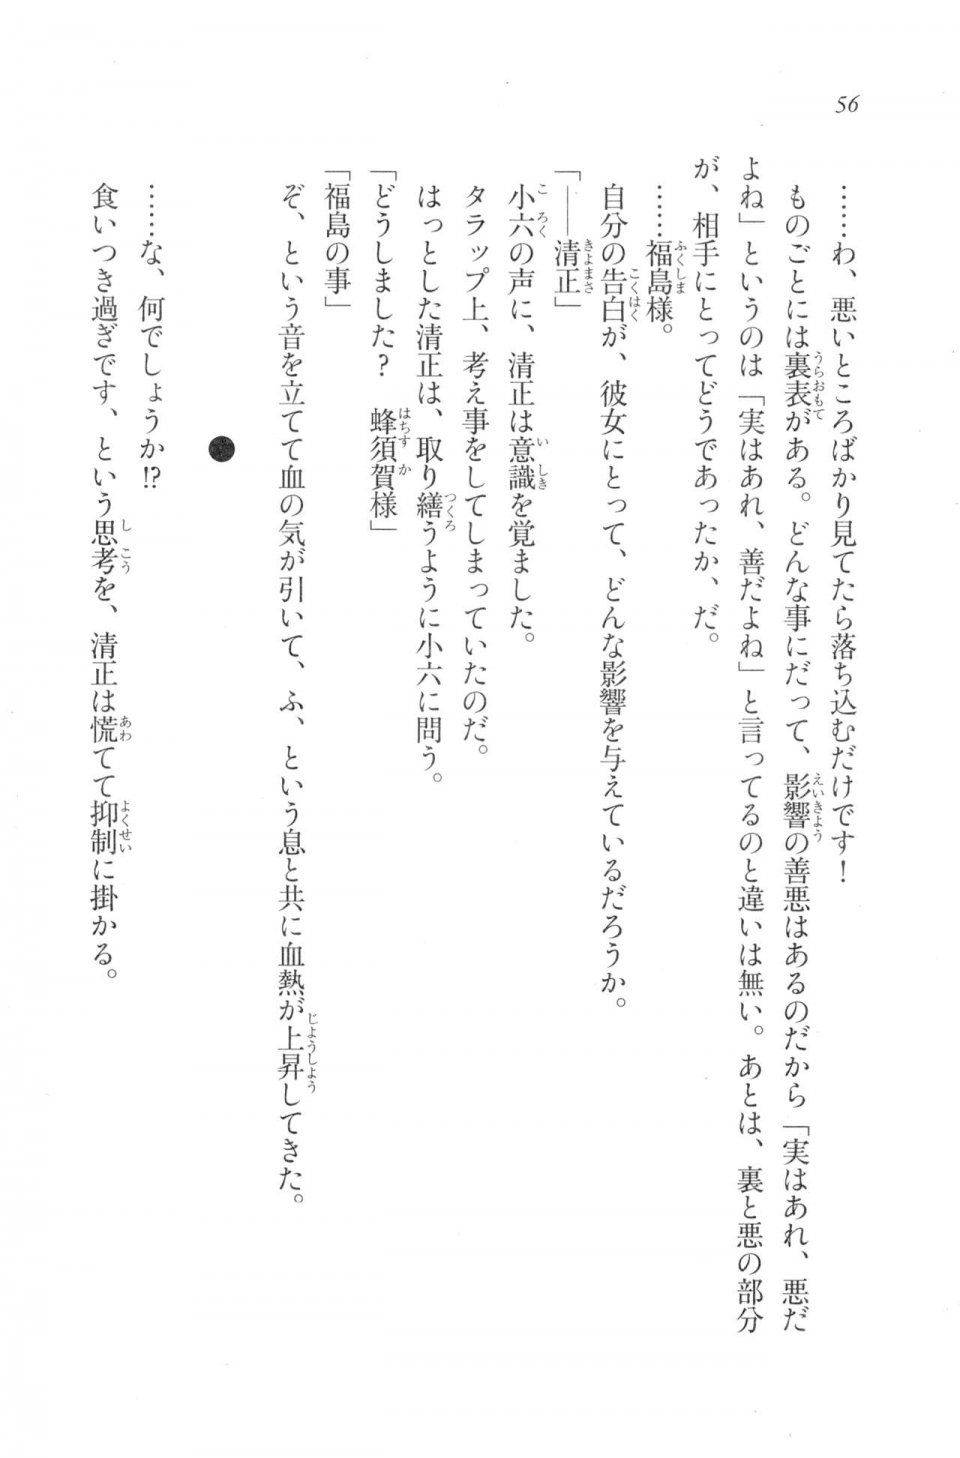 Kyoukai Senjou no Horizon LN Vol 20(8B) - Photo #56